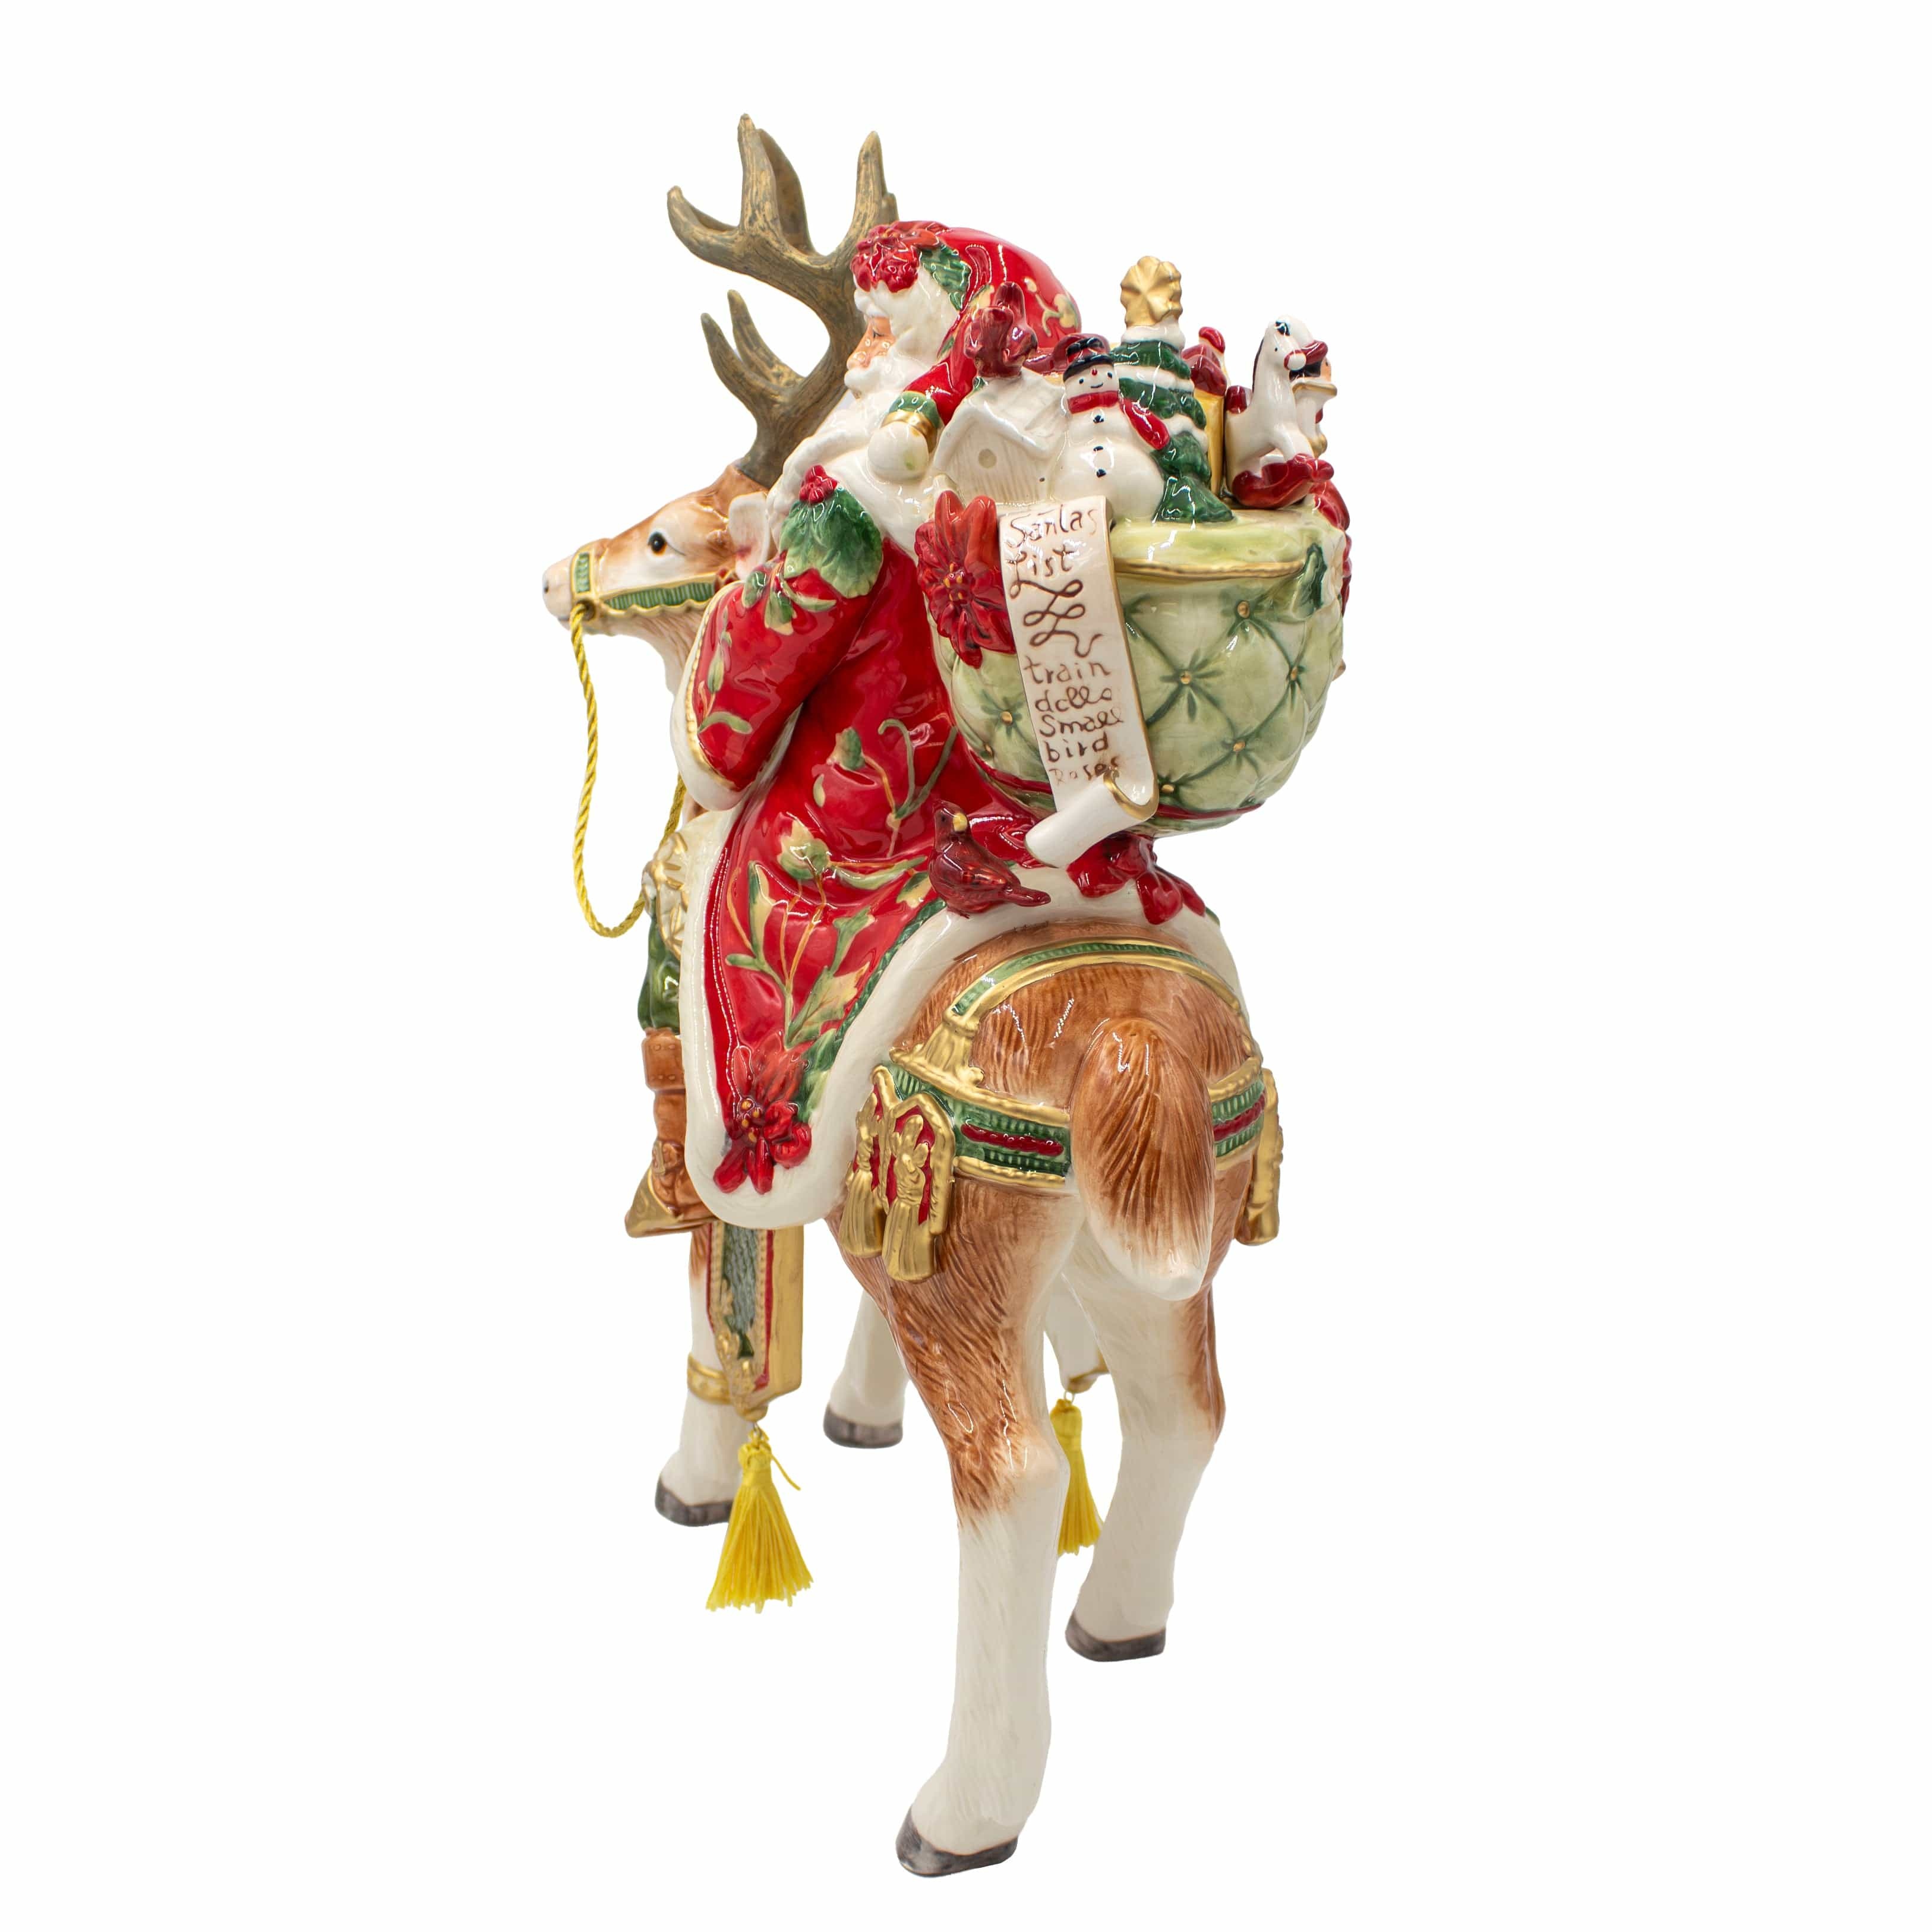 Cardinal Christmas Santa and Reindeer Figurine,16.5 IN